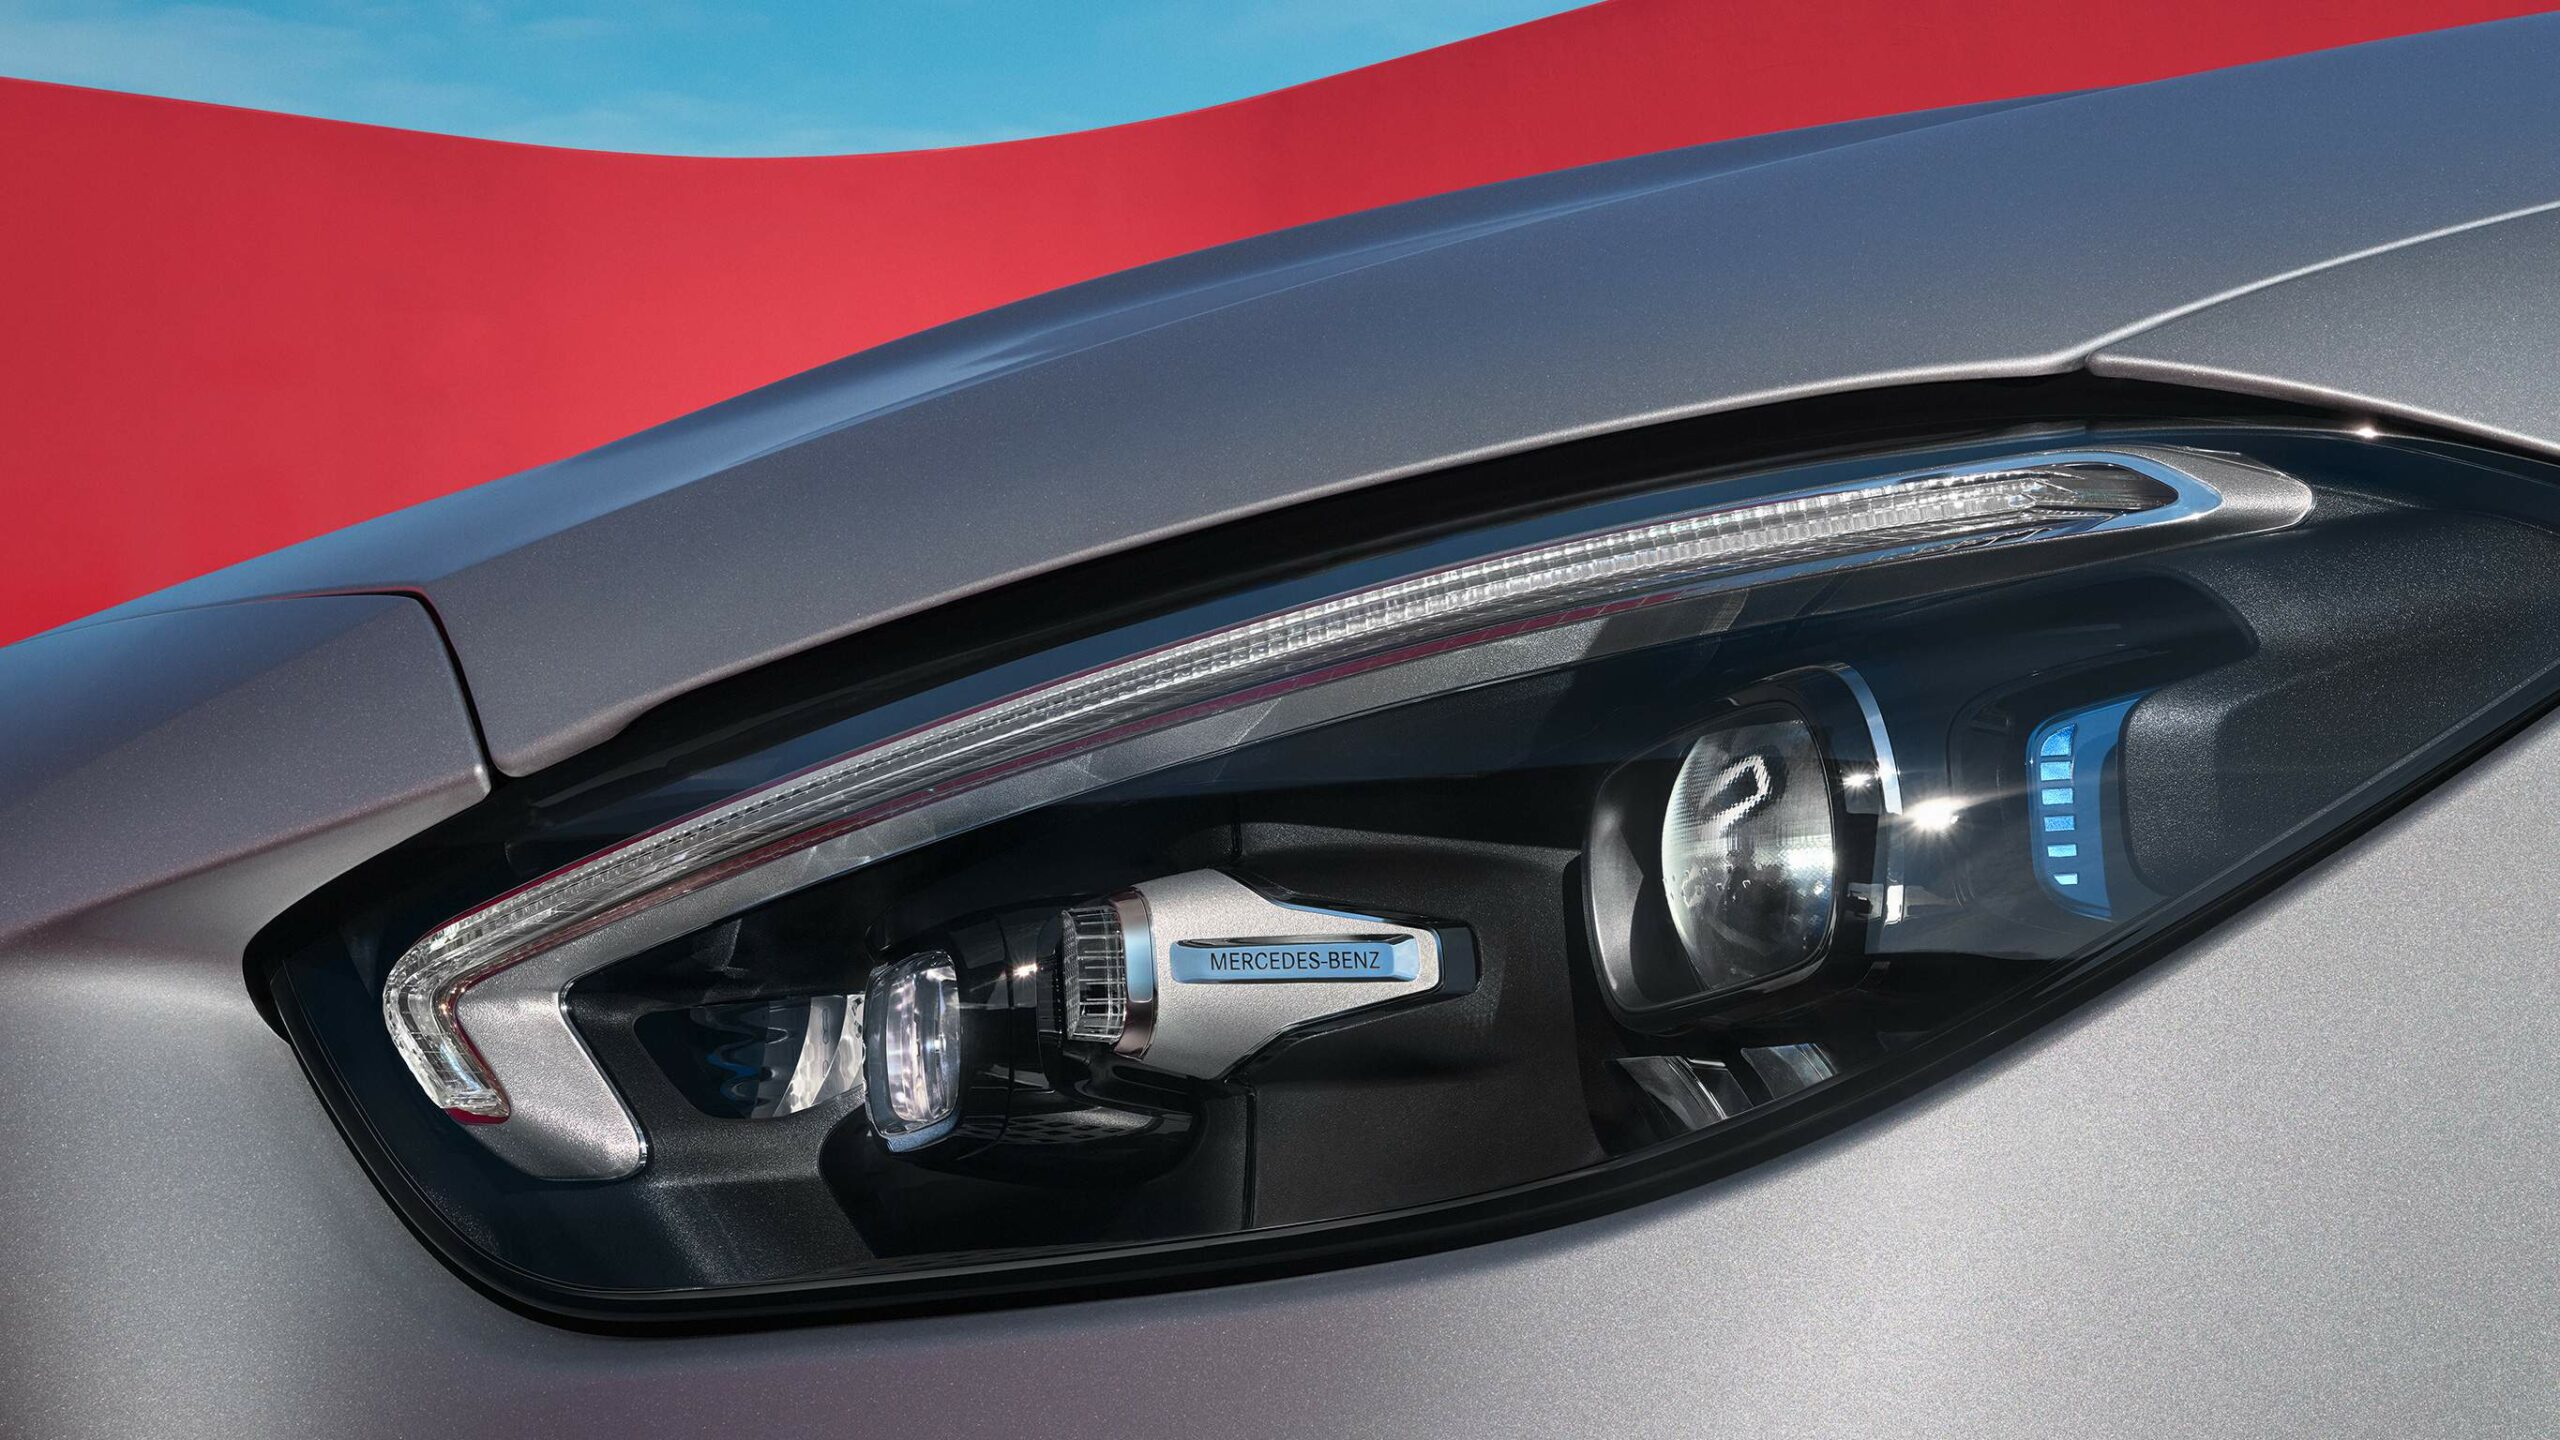 Diseño de las luces frontales LED de la Clase C Sedan de Mercedes-Benz